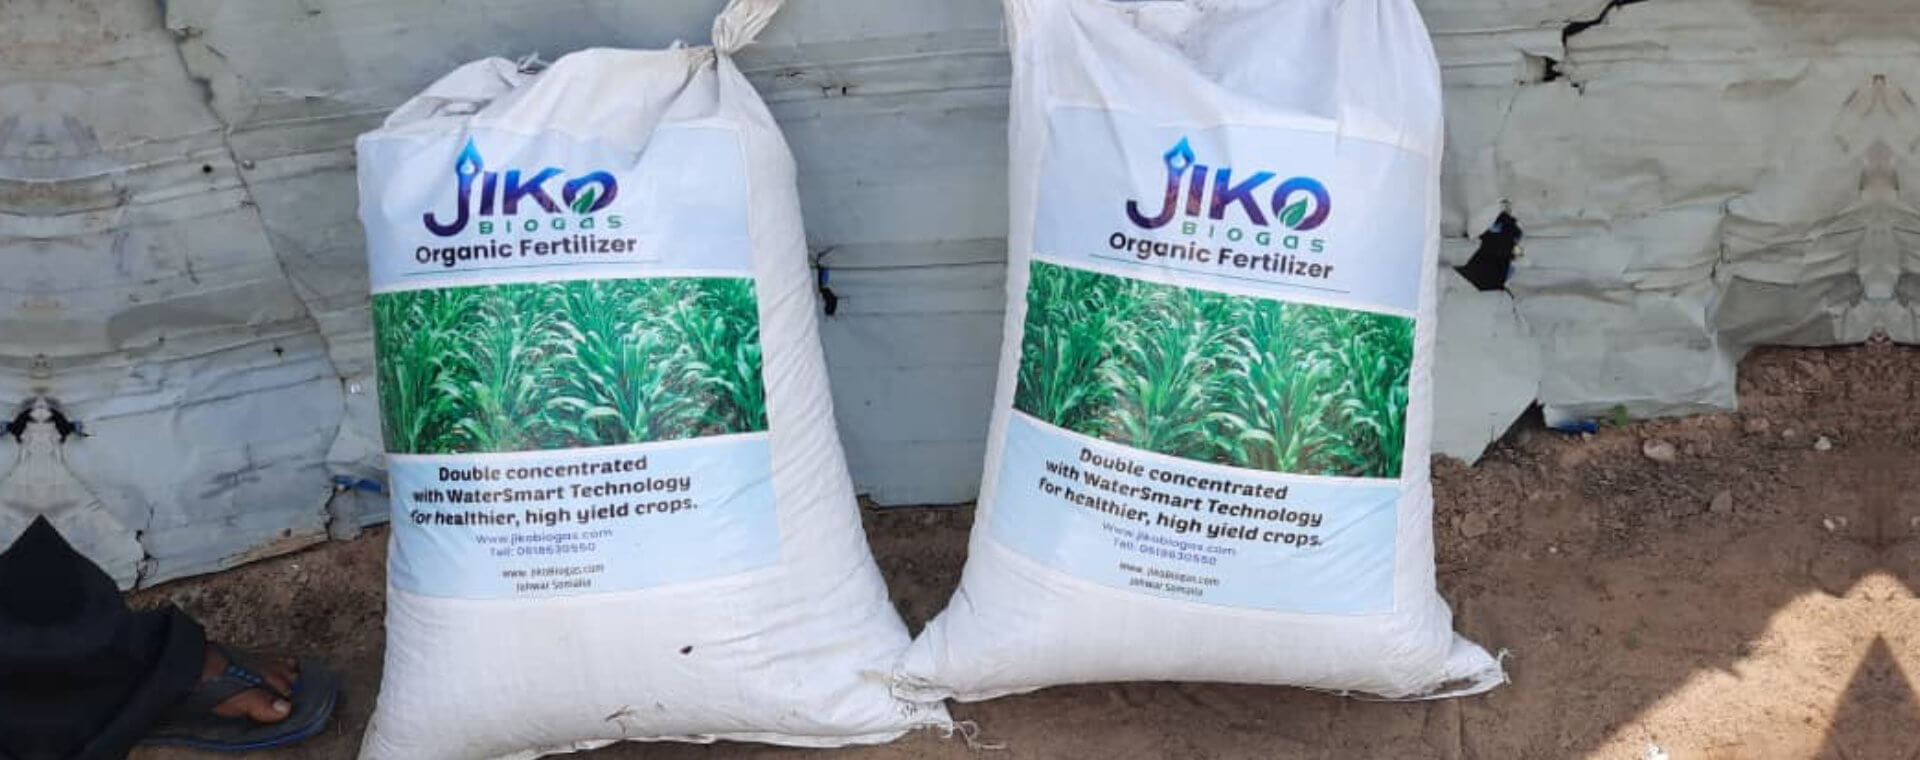 JIKO fertilizer